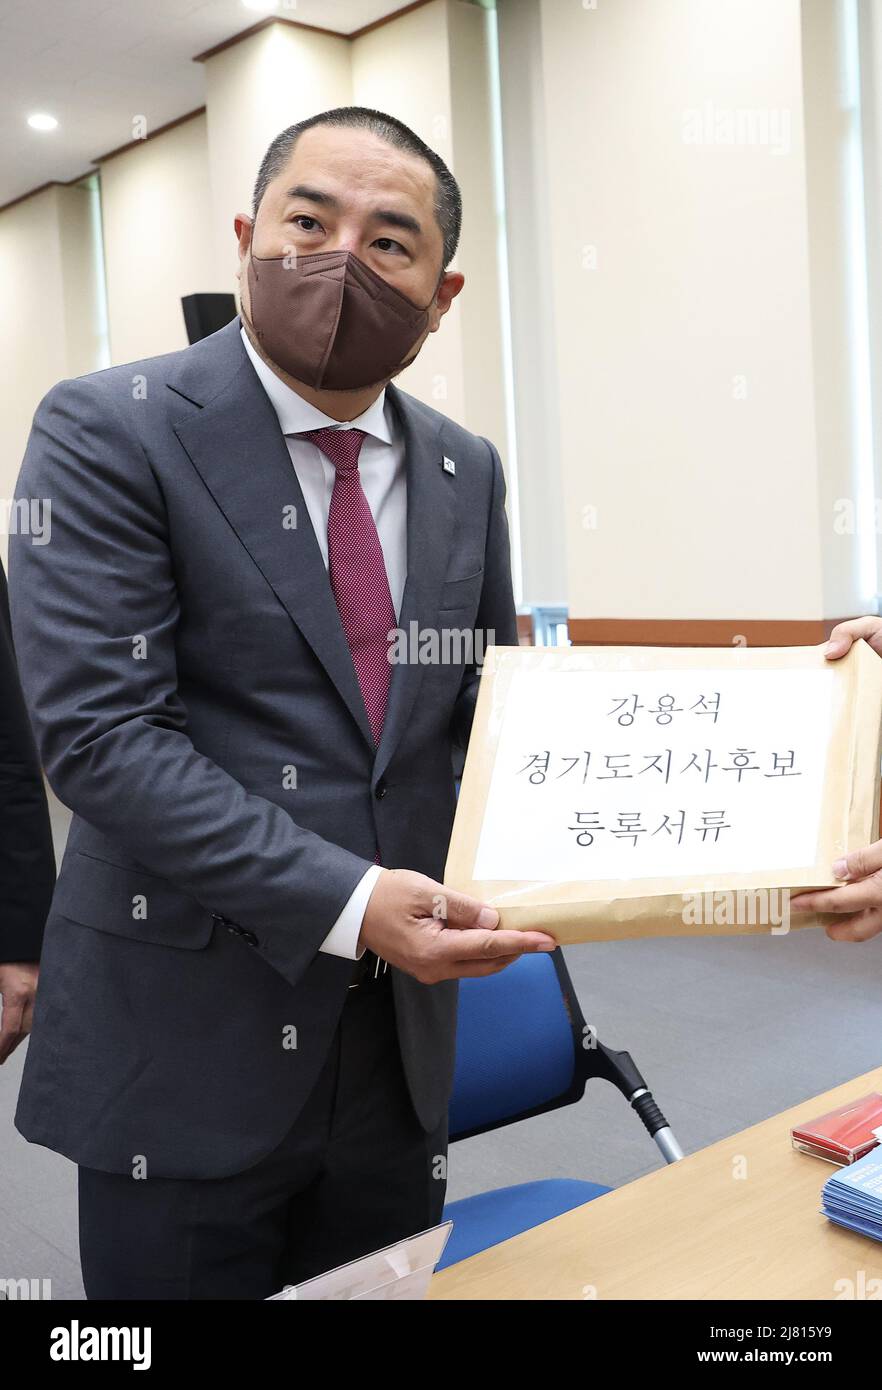 12th de mayo de 2022. Candidato para la carrera gubernatorial de Gyeonggi El candidato independiente Kang Yong-seok registra su candidatura para la elección gubernatorial de Gyeonggi en una oficina de la Comisión Electoral Nacional en Suwon, la capital de la provincia de Gyeonggi, el 12 de mayo de 2022. La elección se llevará a cabo como parte de las elecciones locales del 1 de junio para elegir alcaldes, gobernadores y superintendentes de educación. Crédito: Yonhap/Newcom/Alamy Live News Foto de stock